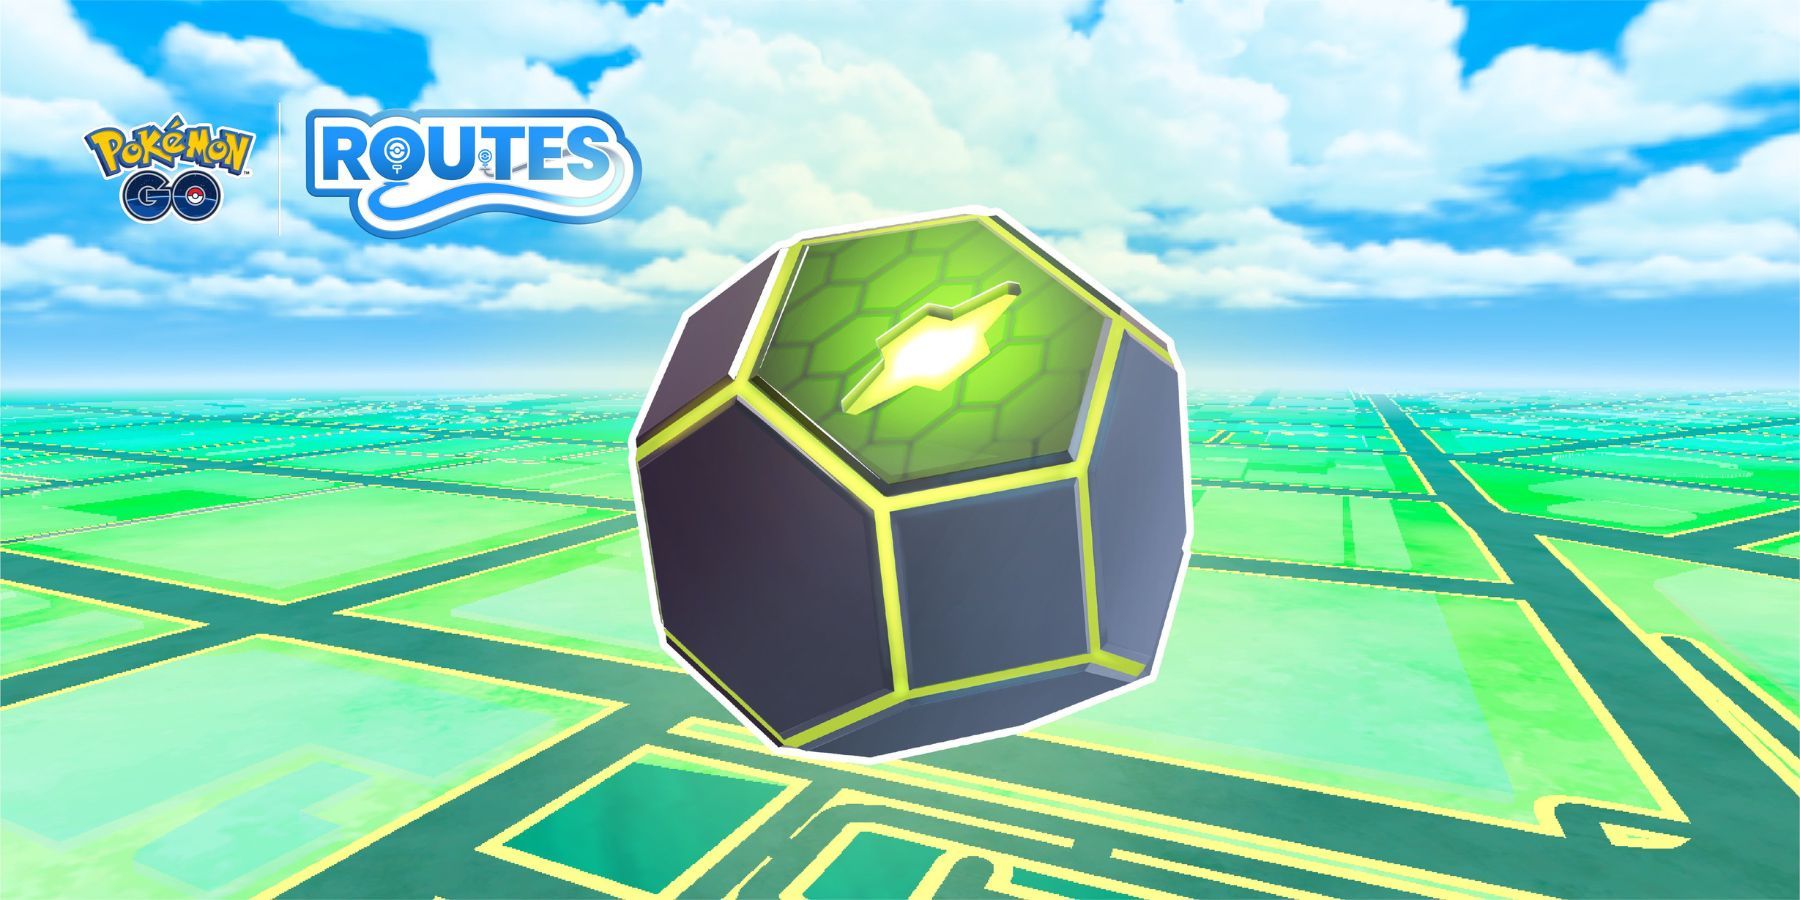 Zygarde Cube in Pokemon GO